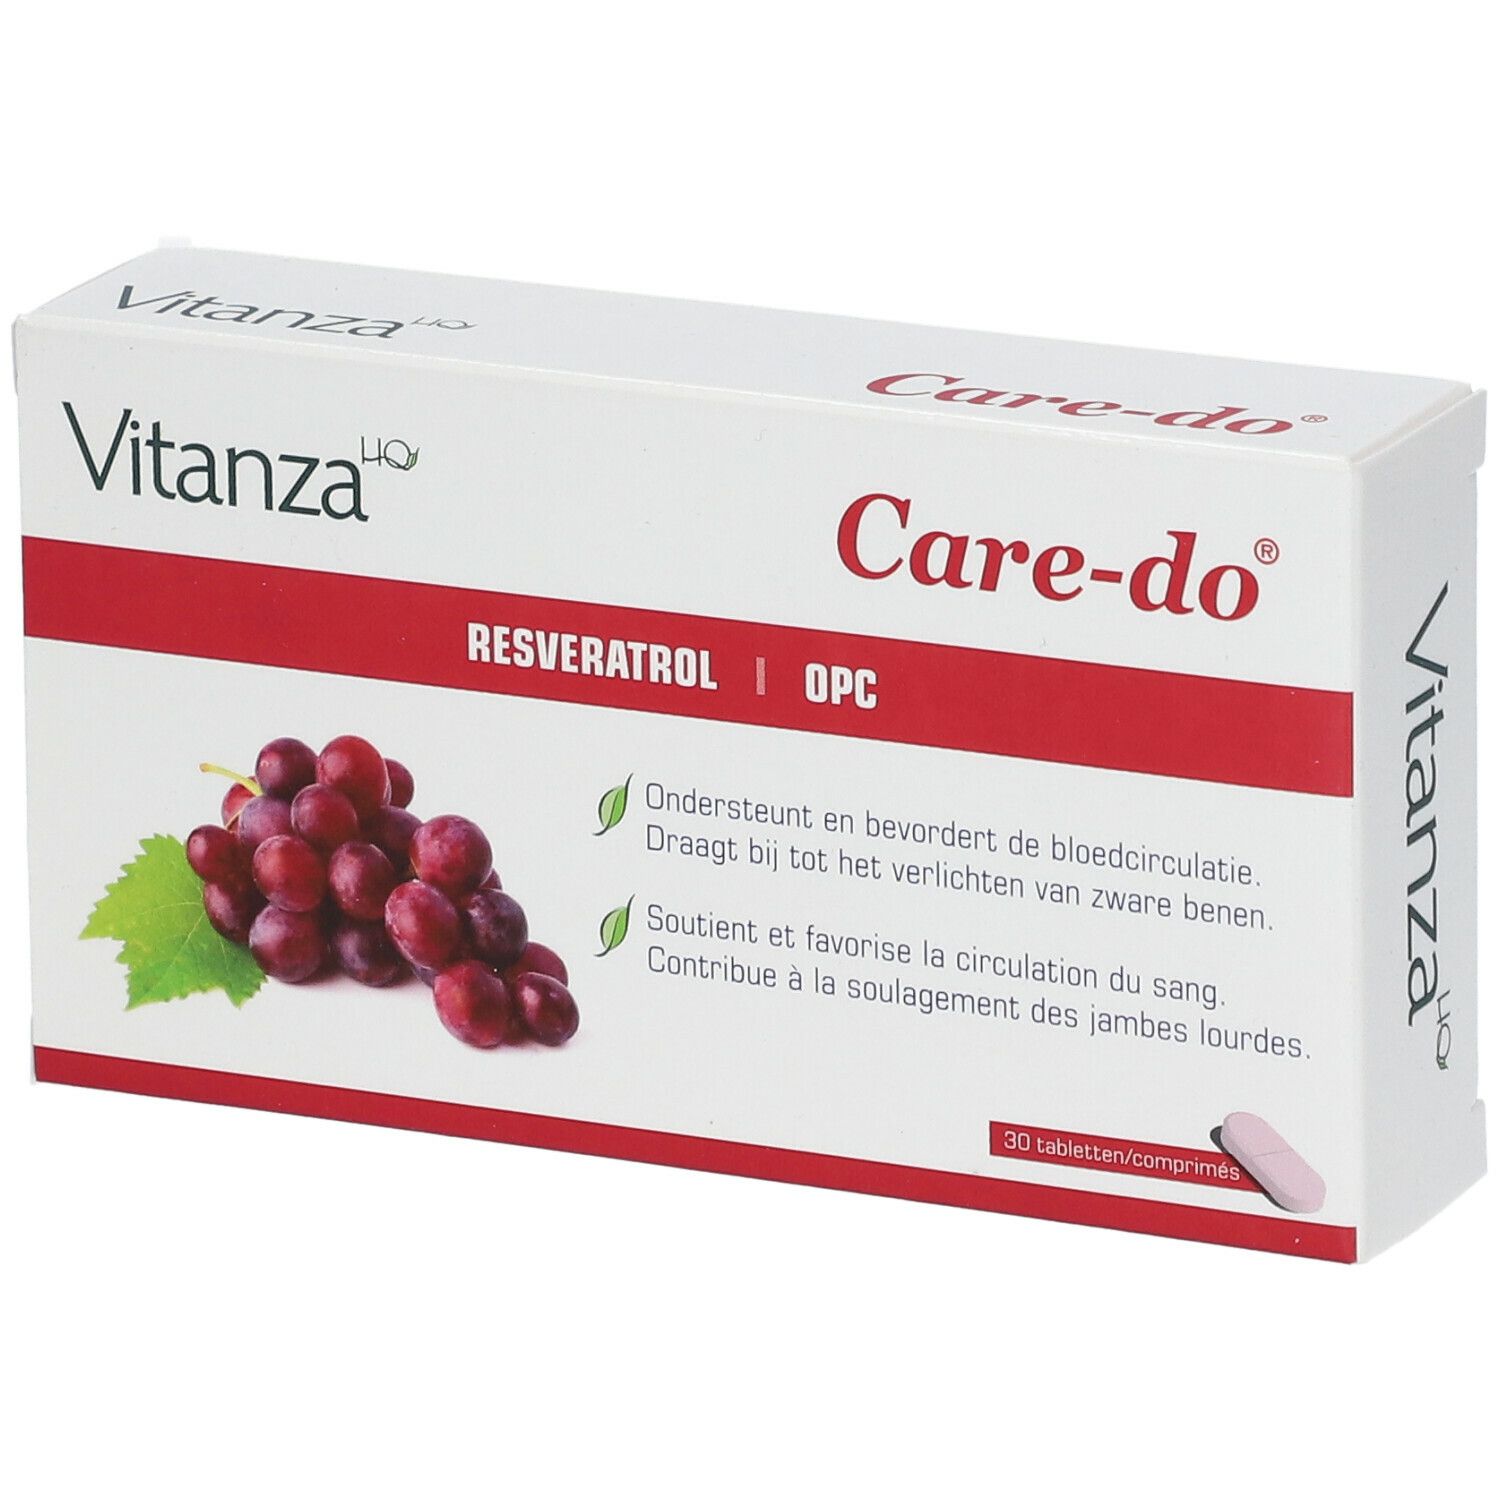 Image of Vitanza HQ Care-do®